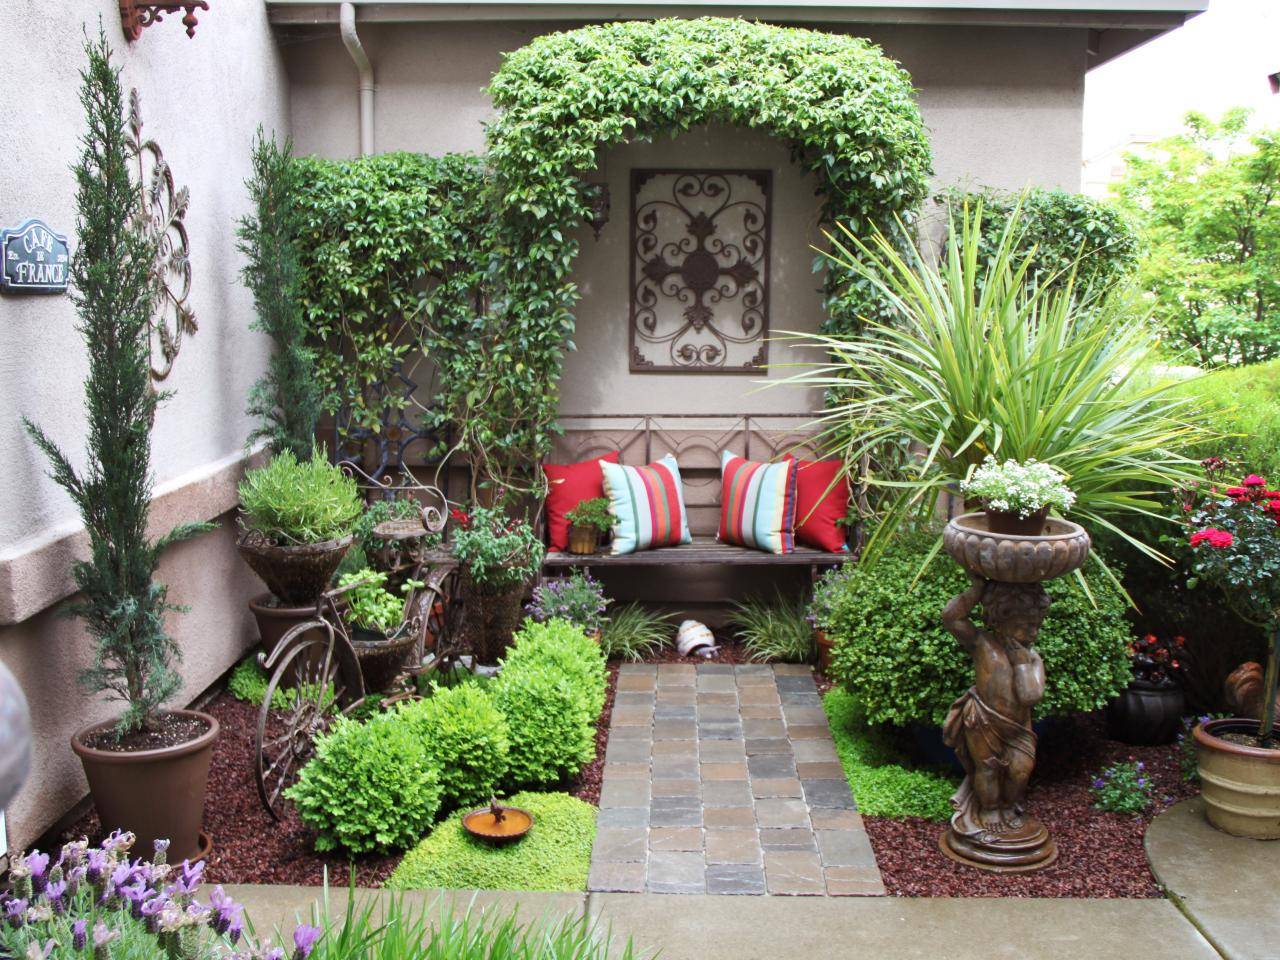 Inspiring Small Courtyard Garden Design Ideas Courtyard Gardens